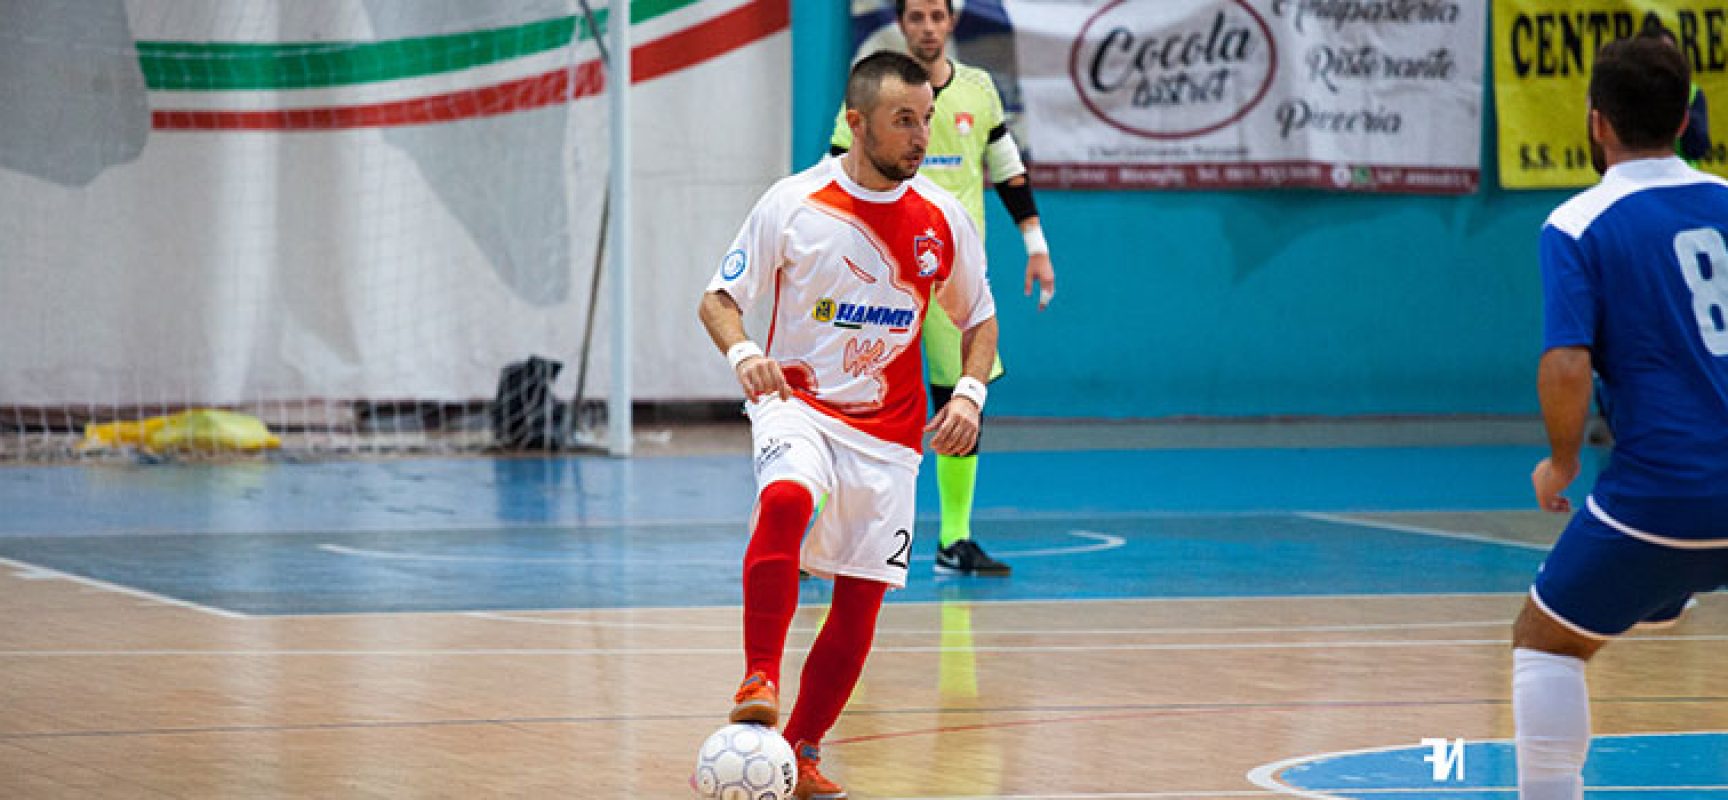 Diaz attende il Futsal Altamura, Acquaviva: “Il nostro campionato inizia sabato”